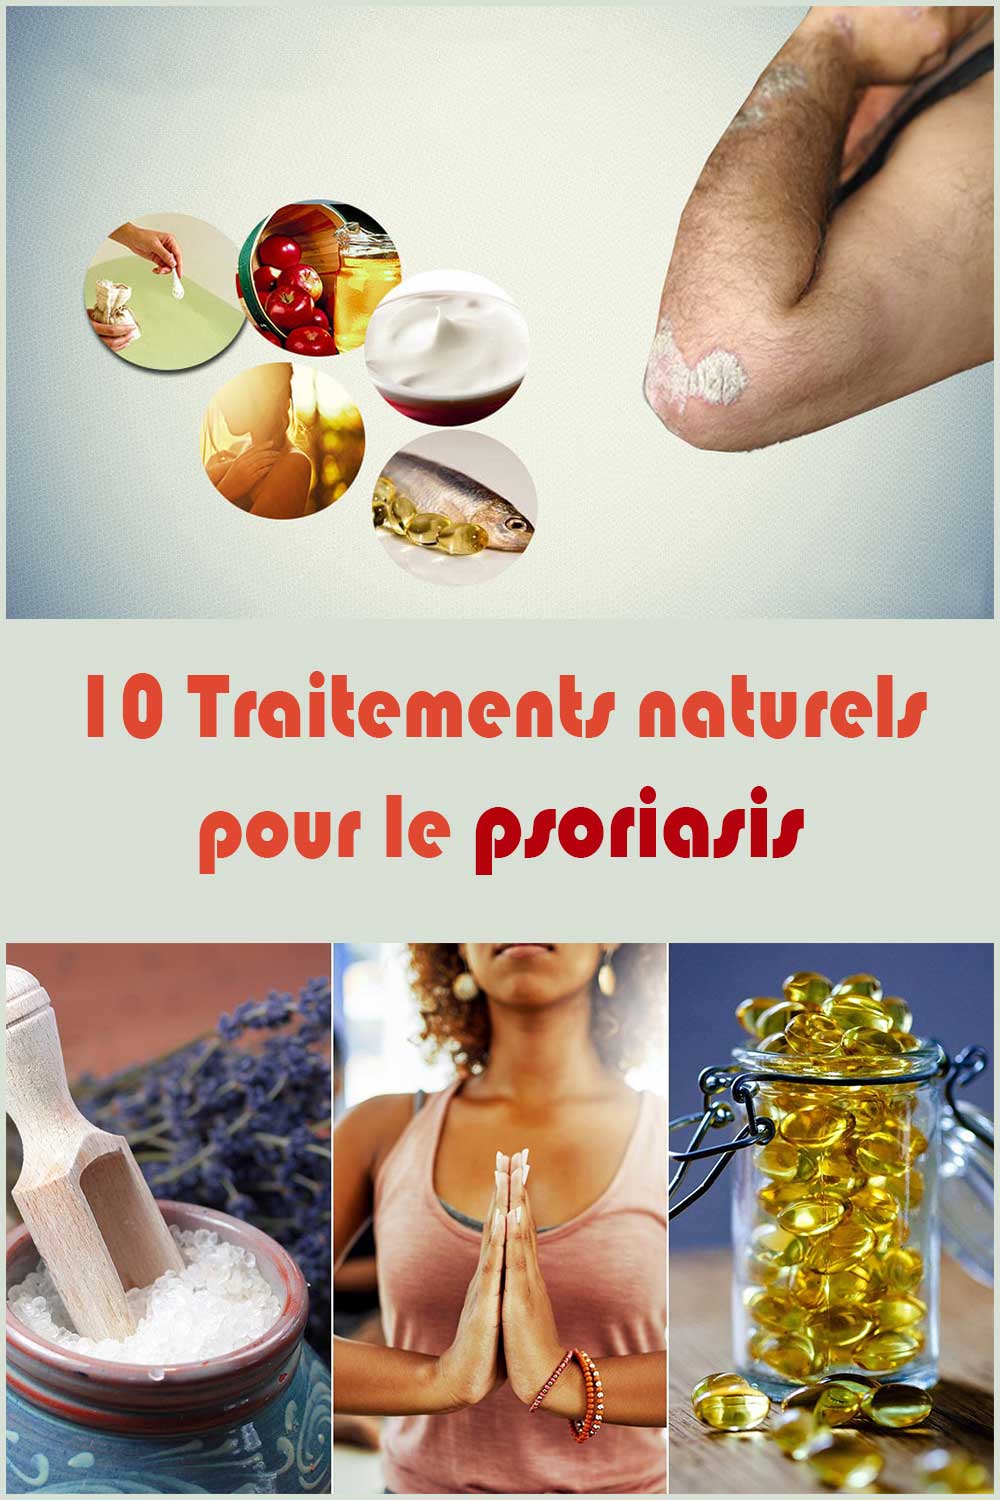 10 Traitements naturels pour le psoriasis